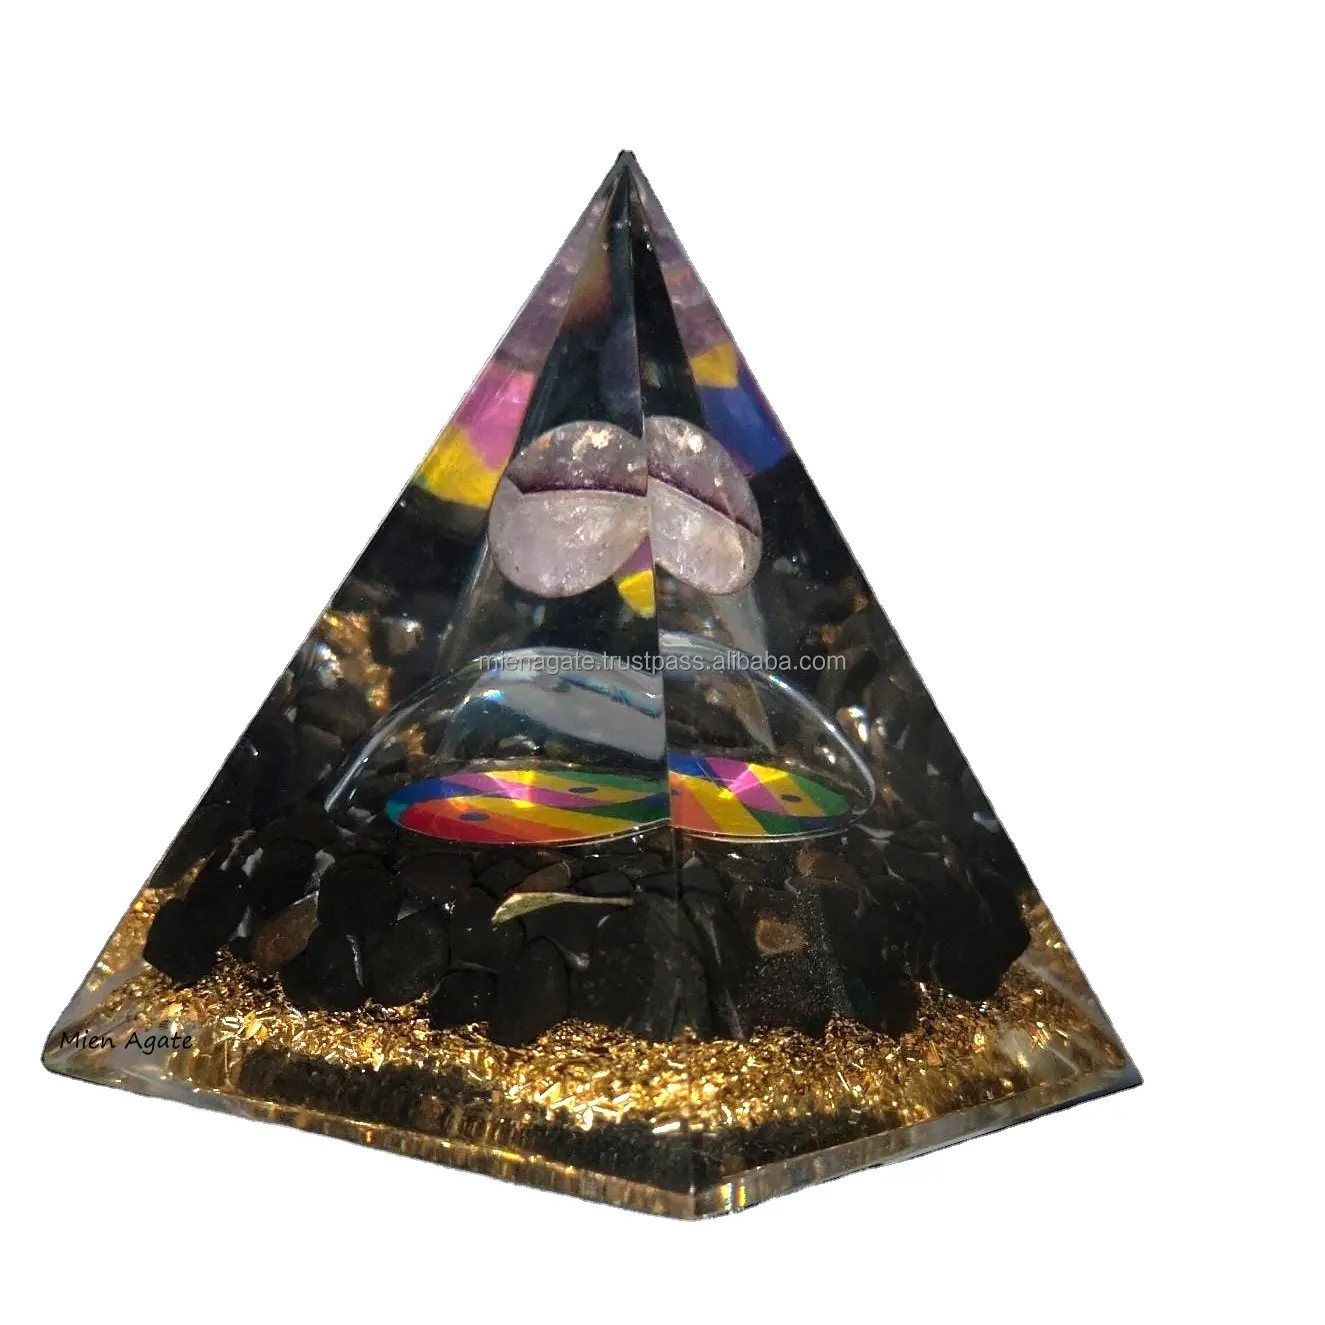 バルクオルゴナイトヨガピラミッドの瞑想の装飾を癒すための球体を備えたプレミアム品質のジェムストーンオルゴーンヌビアンピラミッド